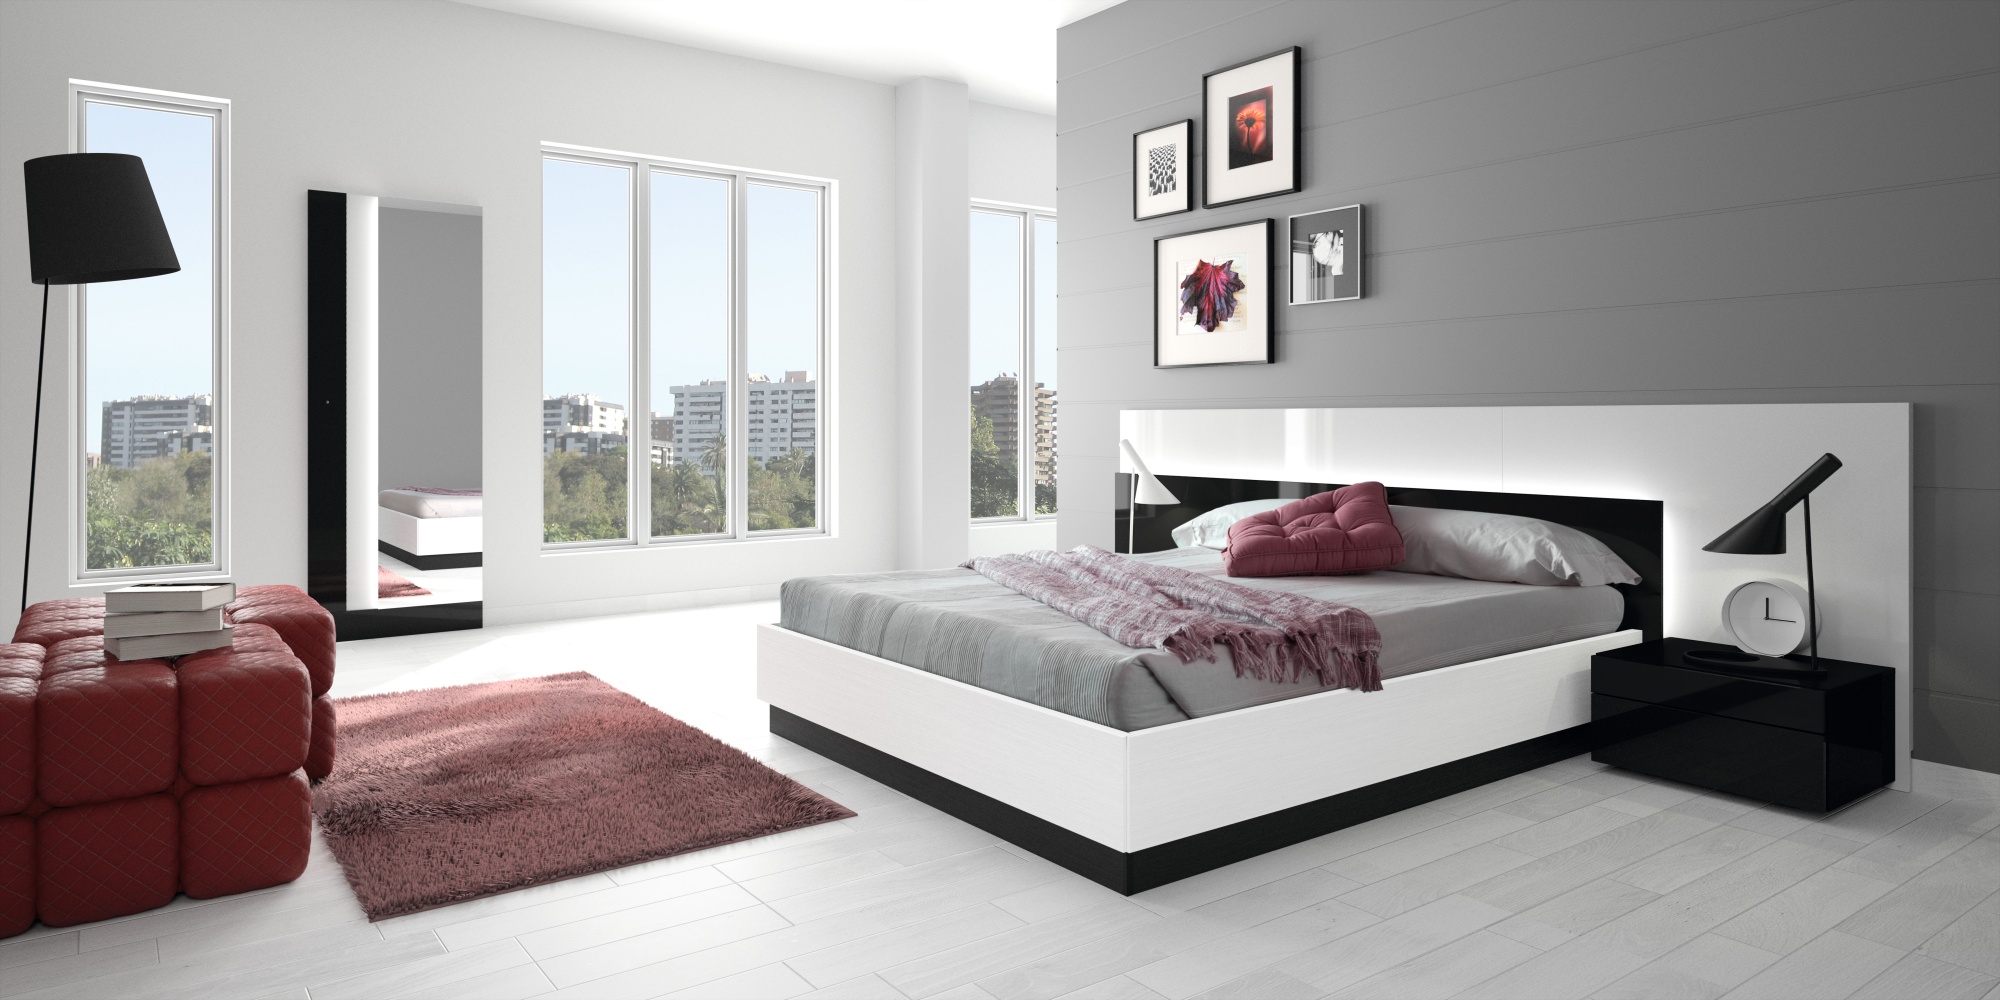 bedroom furniture design bedroom furniture